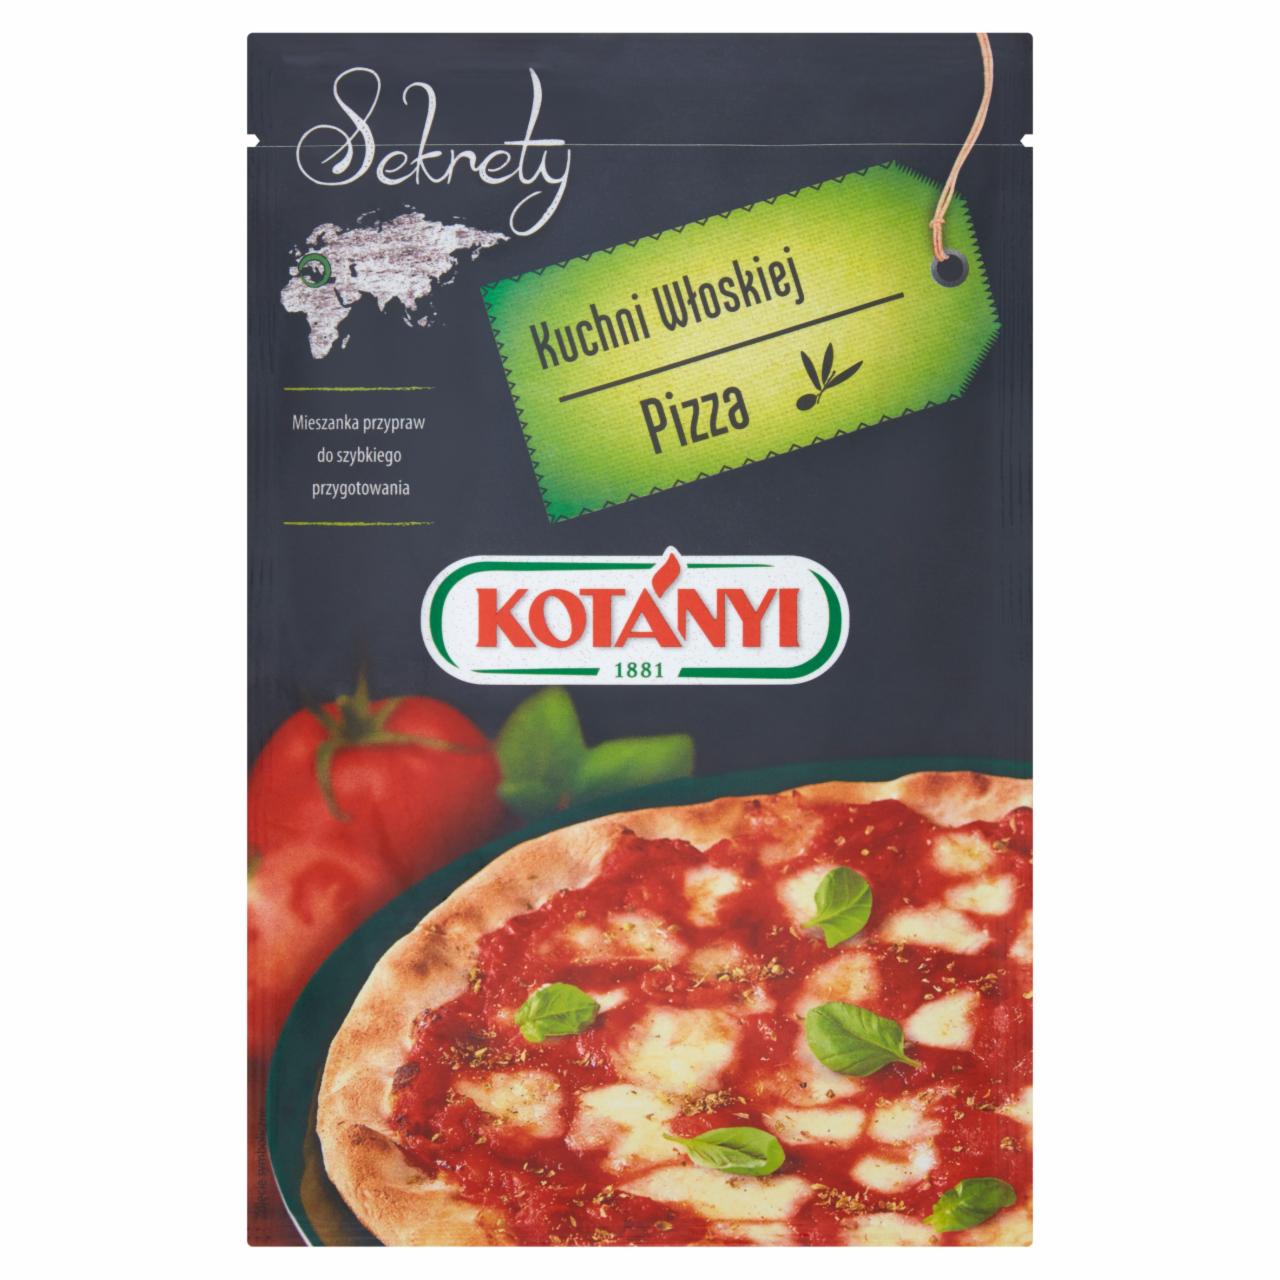 Zdjęcia - Kotányi Sekrety Kuchni Włoskiej Pizza Mieszanka przypraw 18 g